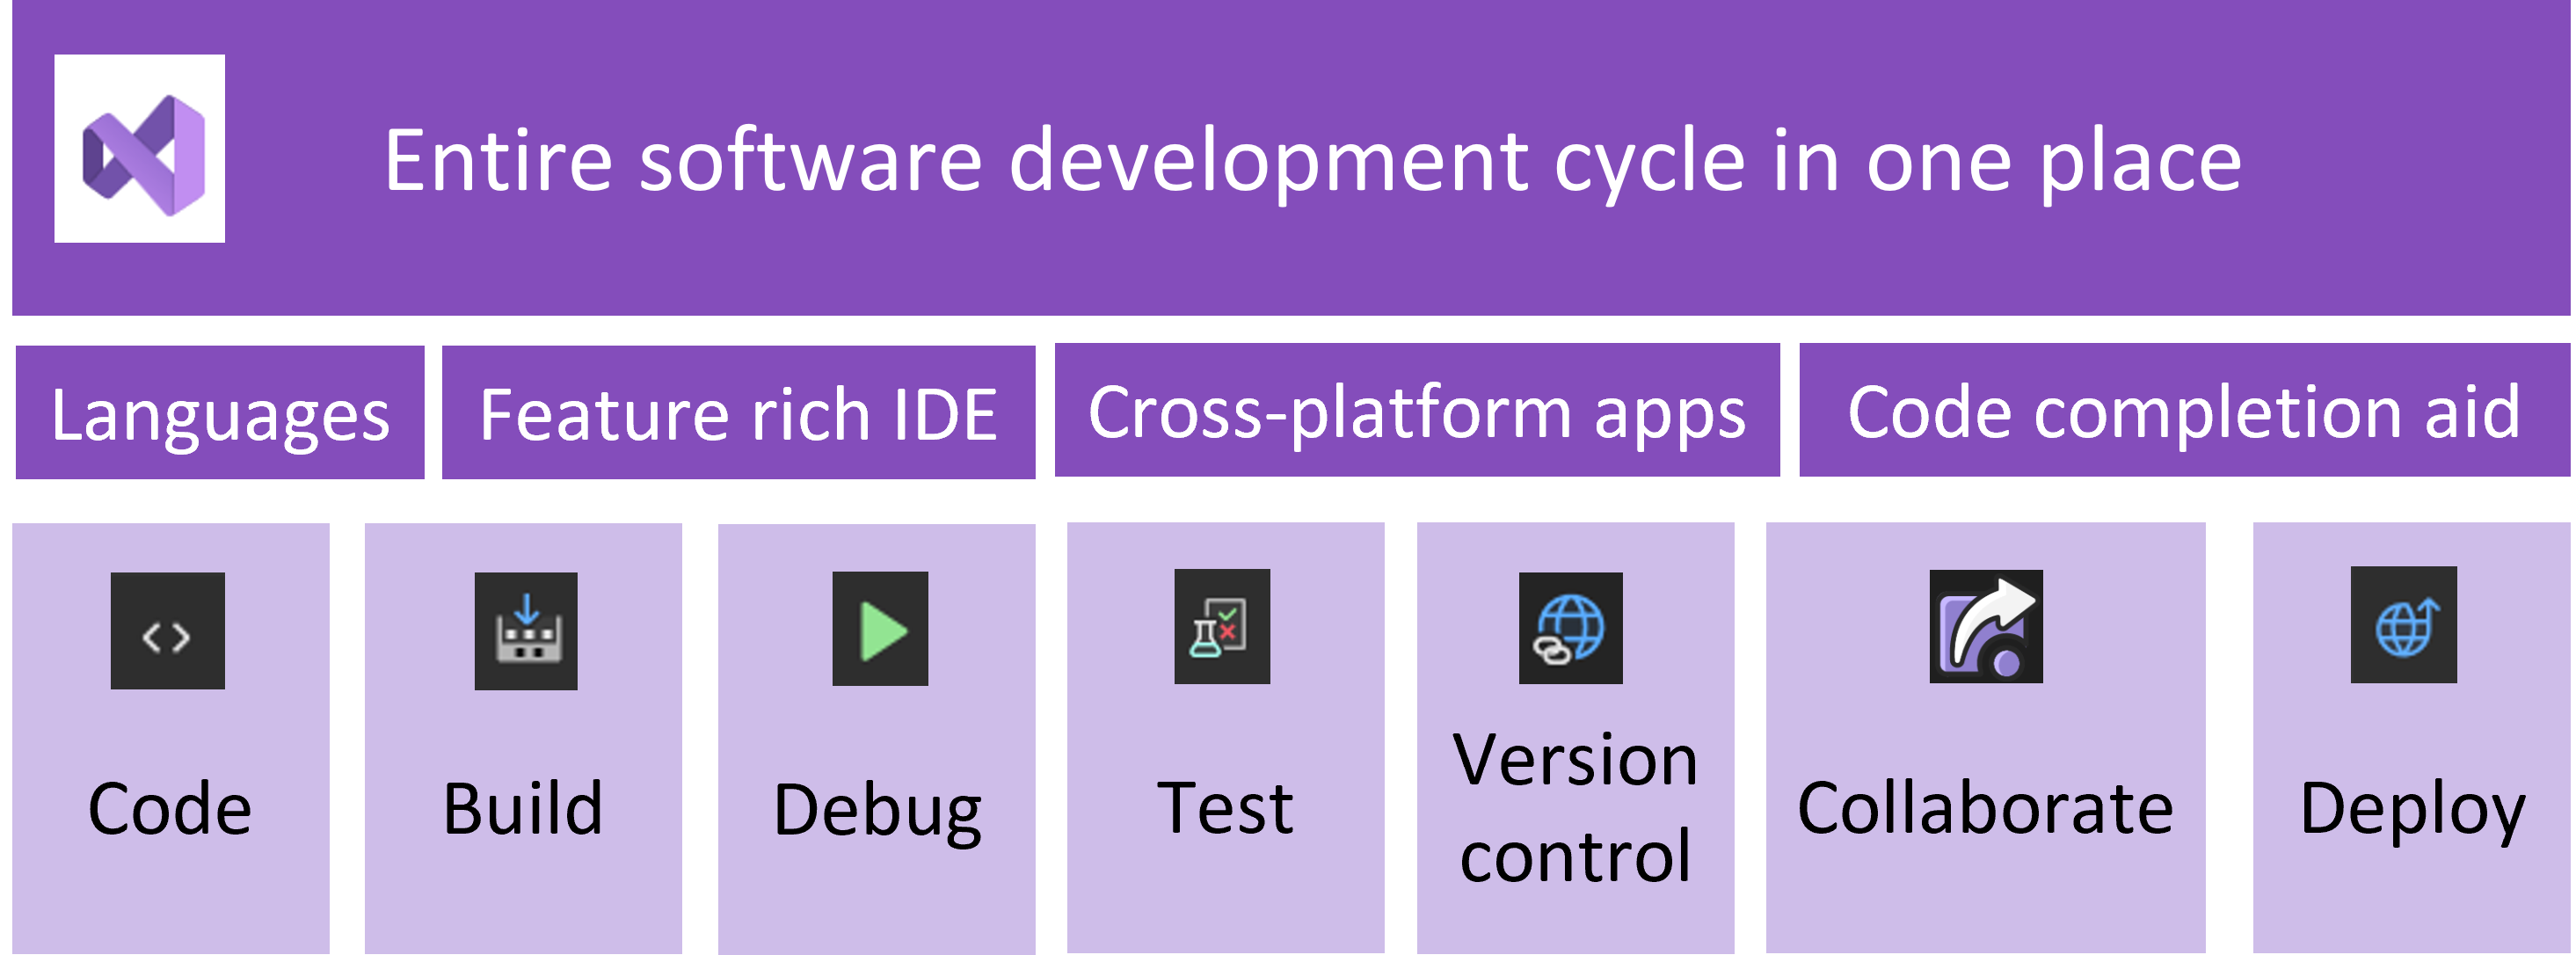 図では、プロセスの各部分に対応する Visual Studio の機能とともにソフトウェアの開発サイクルが示されています。